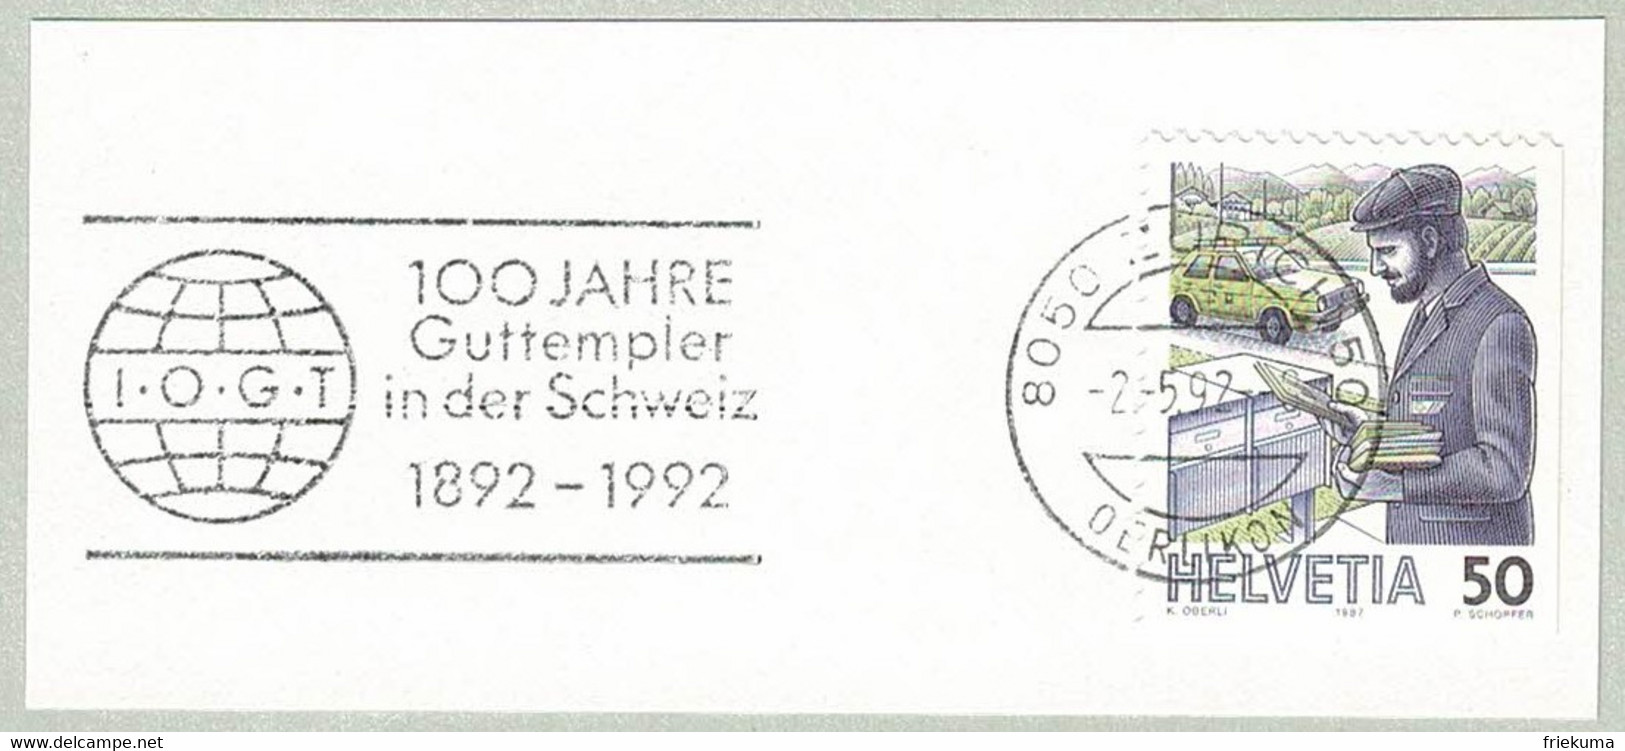 Schweiz / Helvetia 1992, Flaggenstempel Guttempler Zürich, Abstinenz, Alkohol, Drogen, Good Templars - Droga